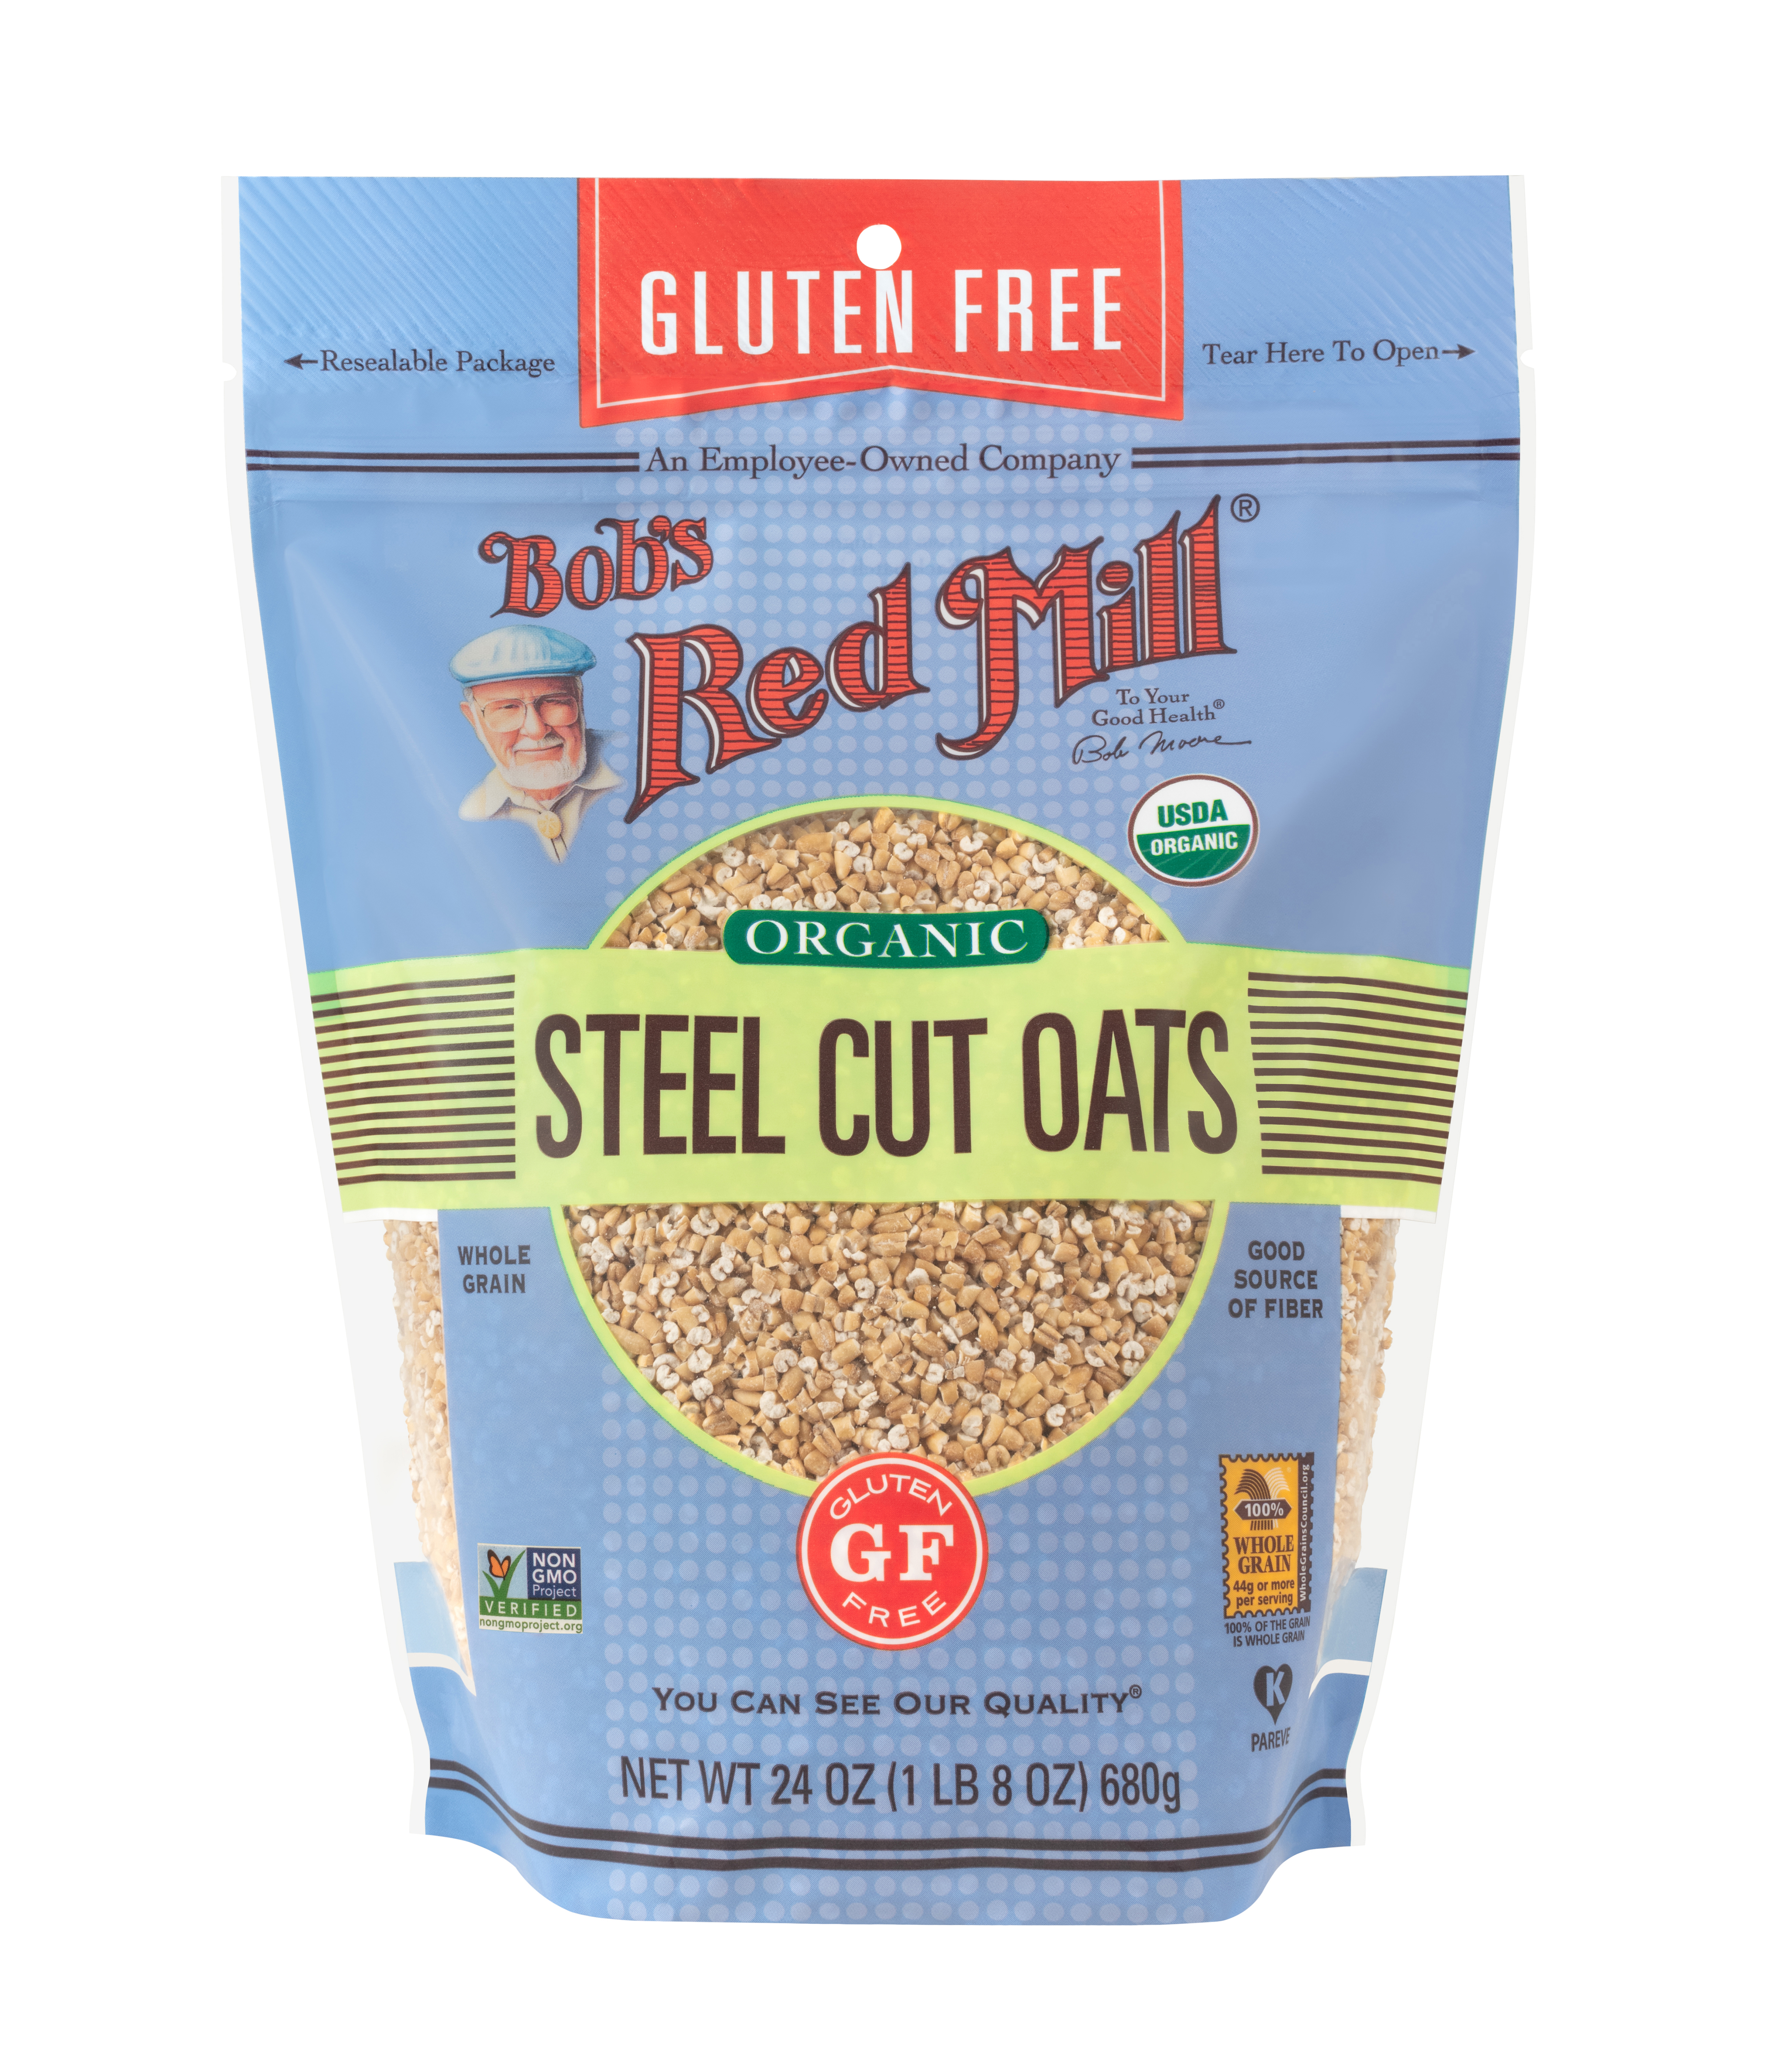 Gluten Free Organic Steel Cut Oats- front